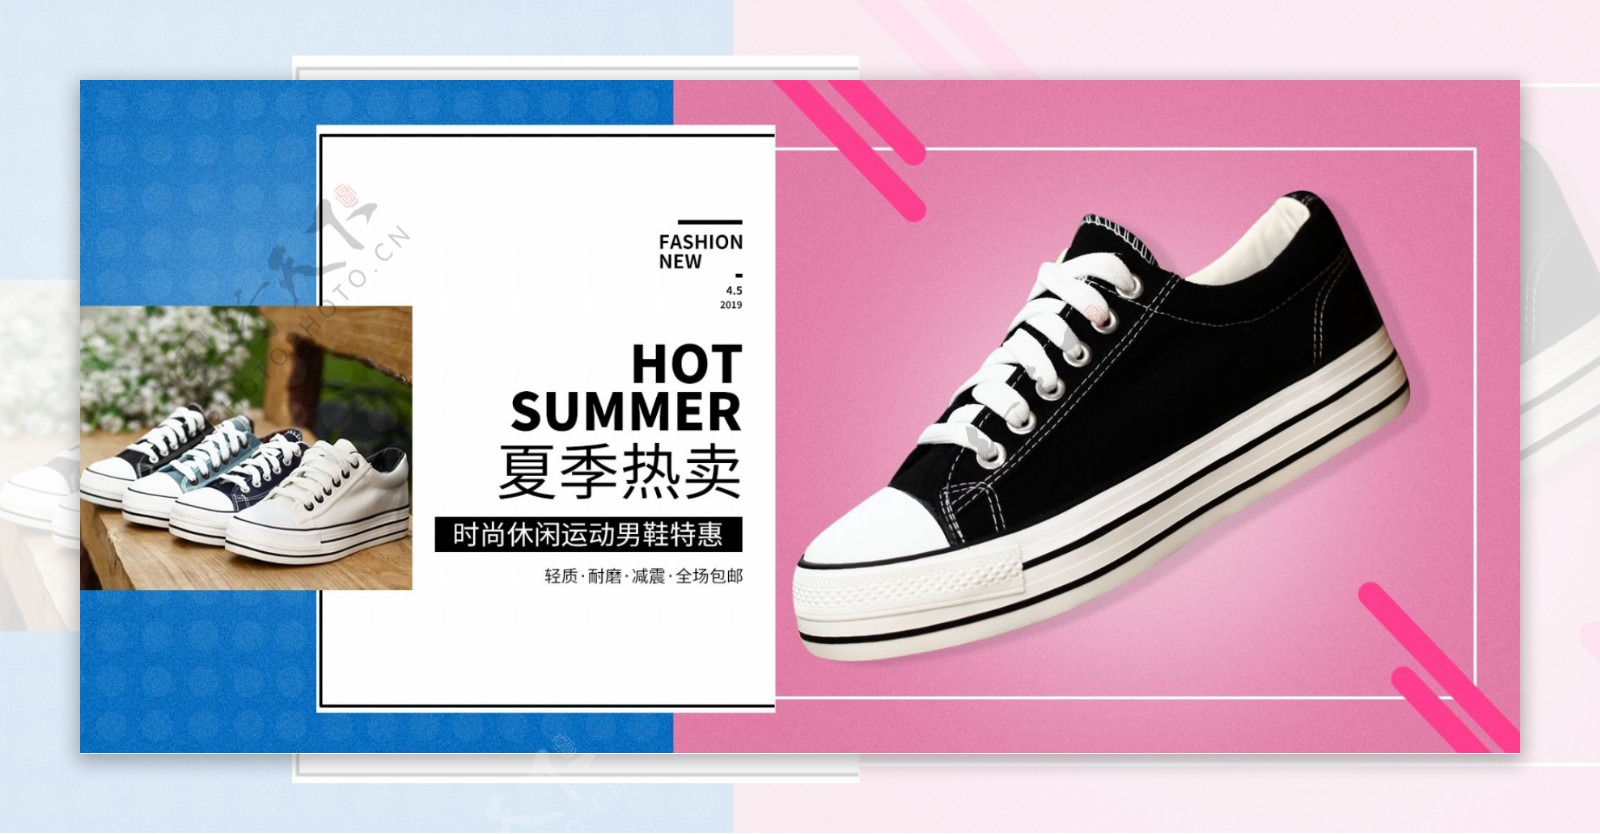 夏季热卖运动鞋休闲鞋电商促销海报